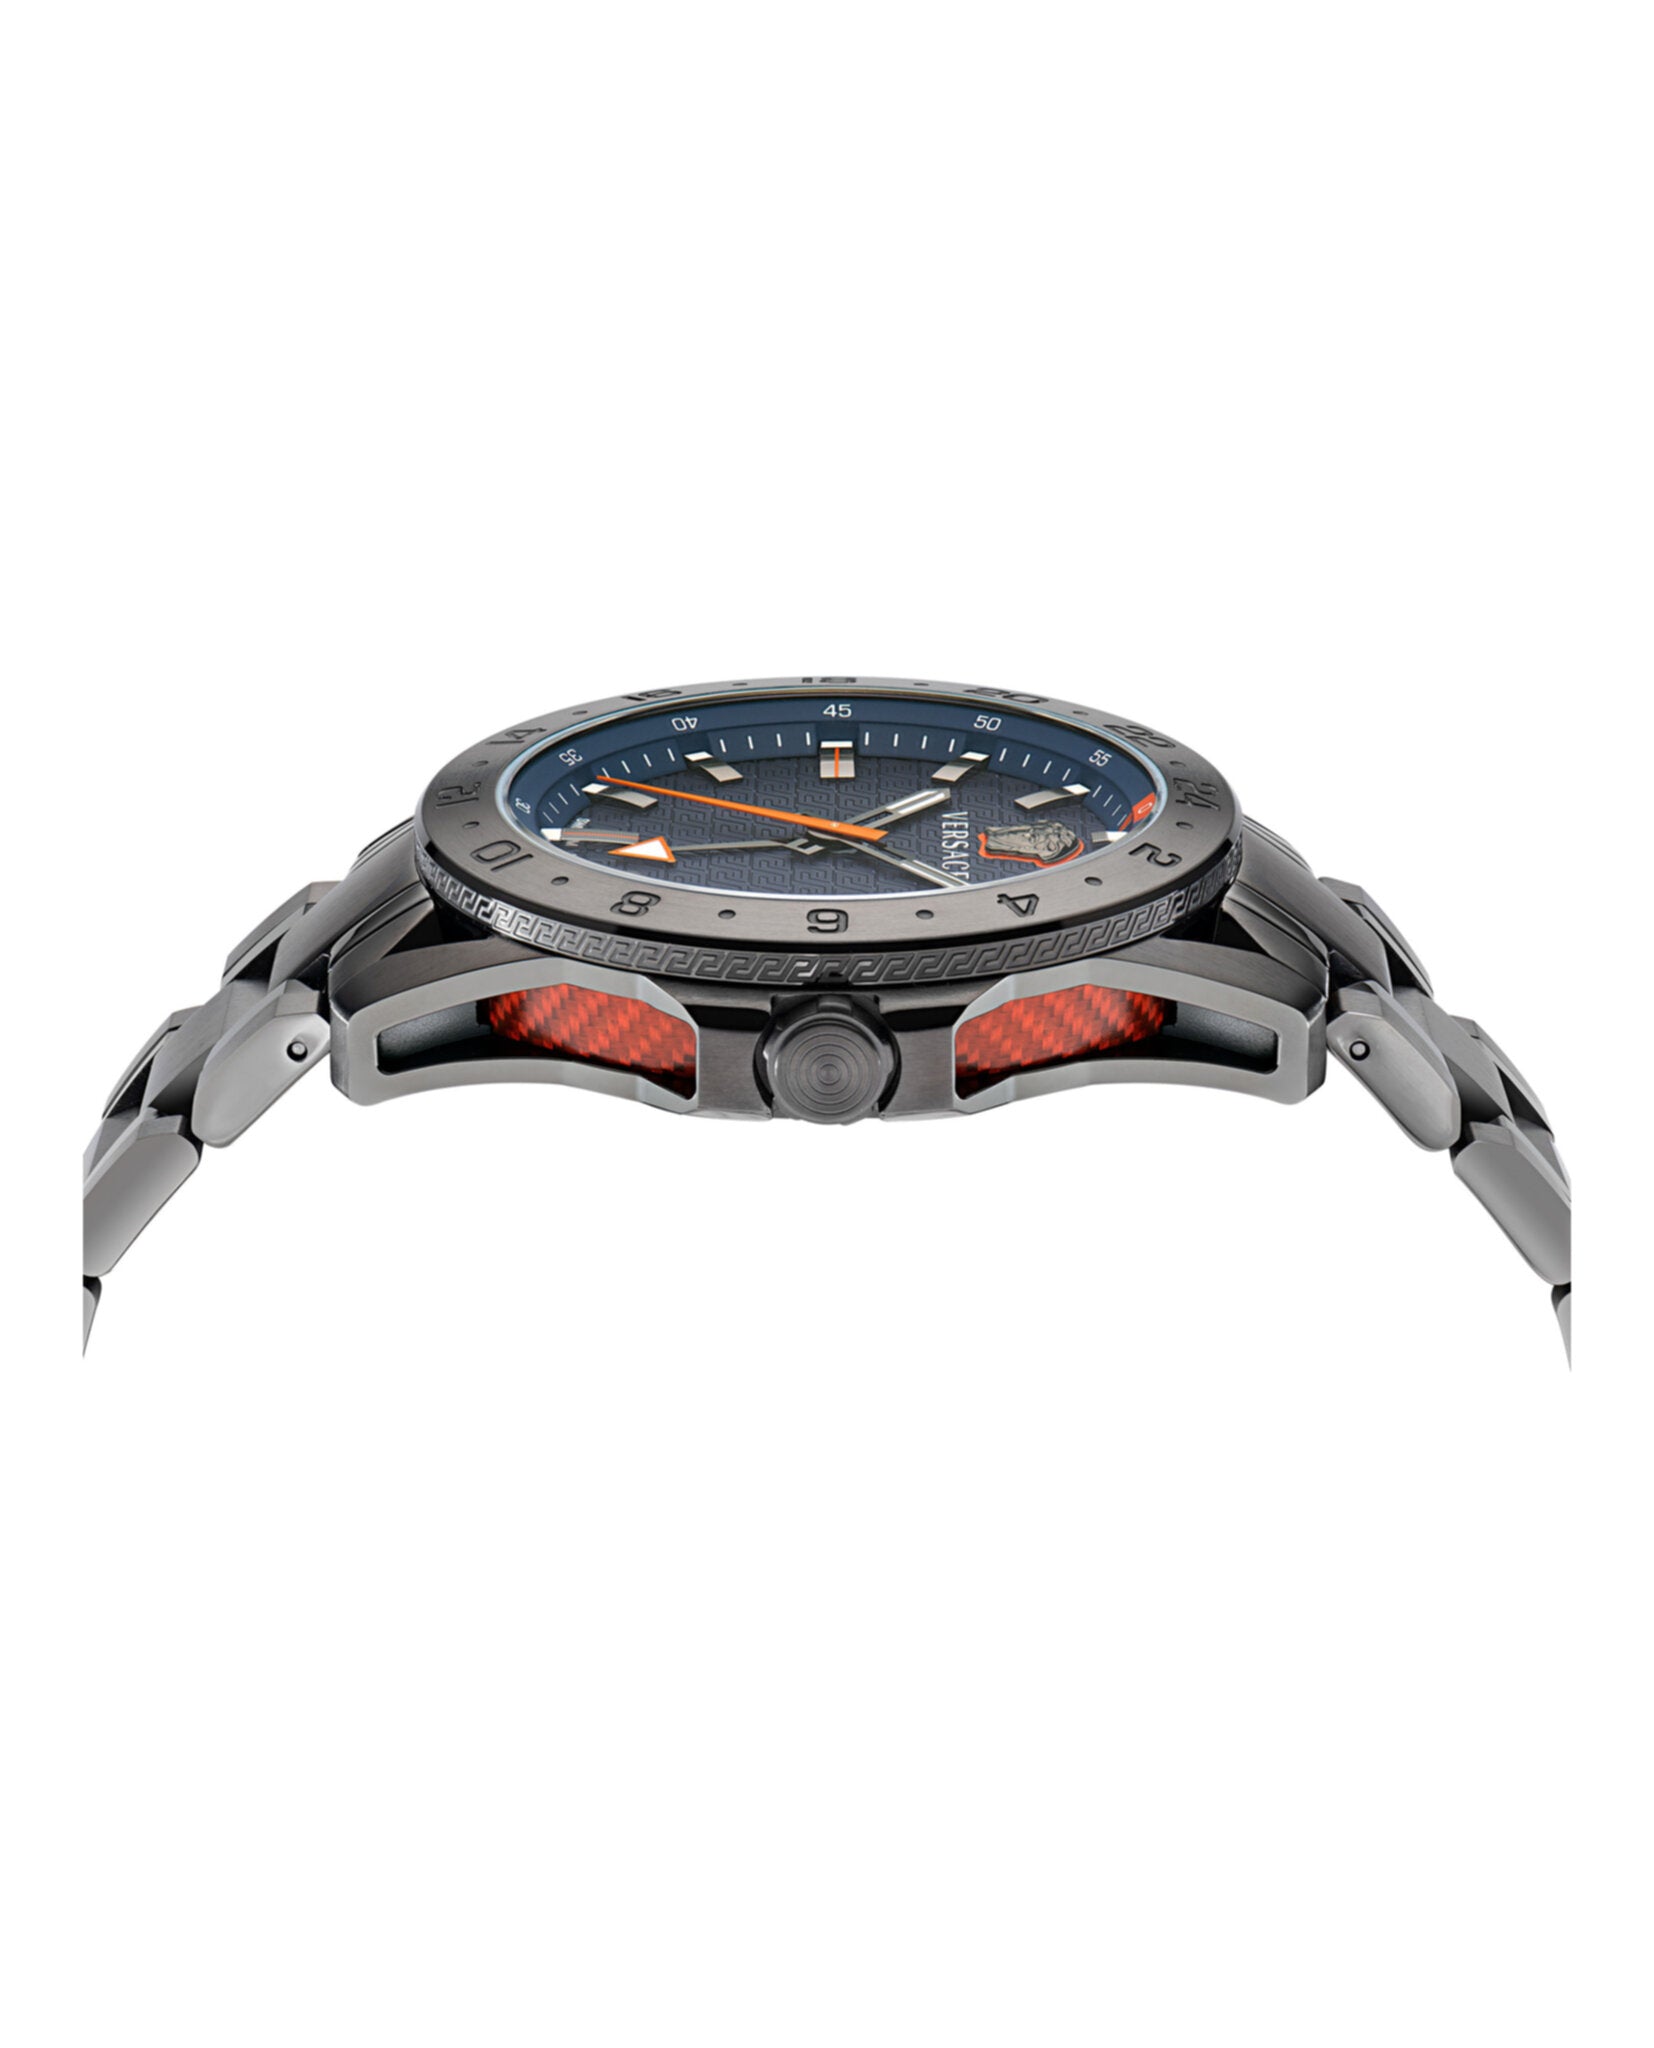 Sport Tech GMT Bracelet Watch